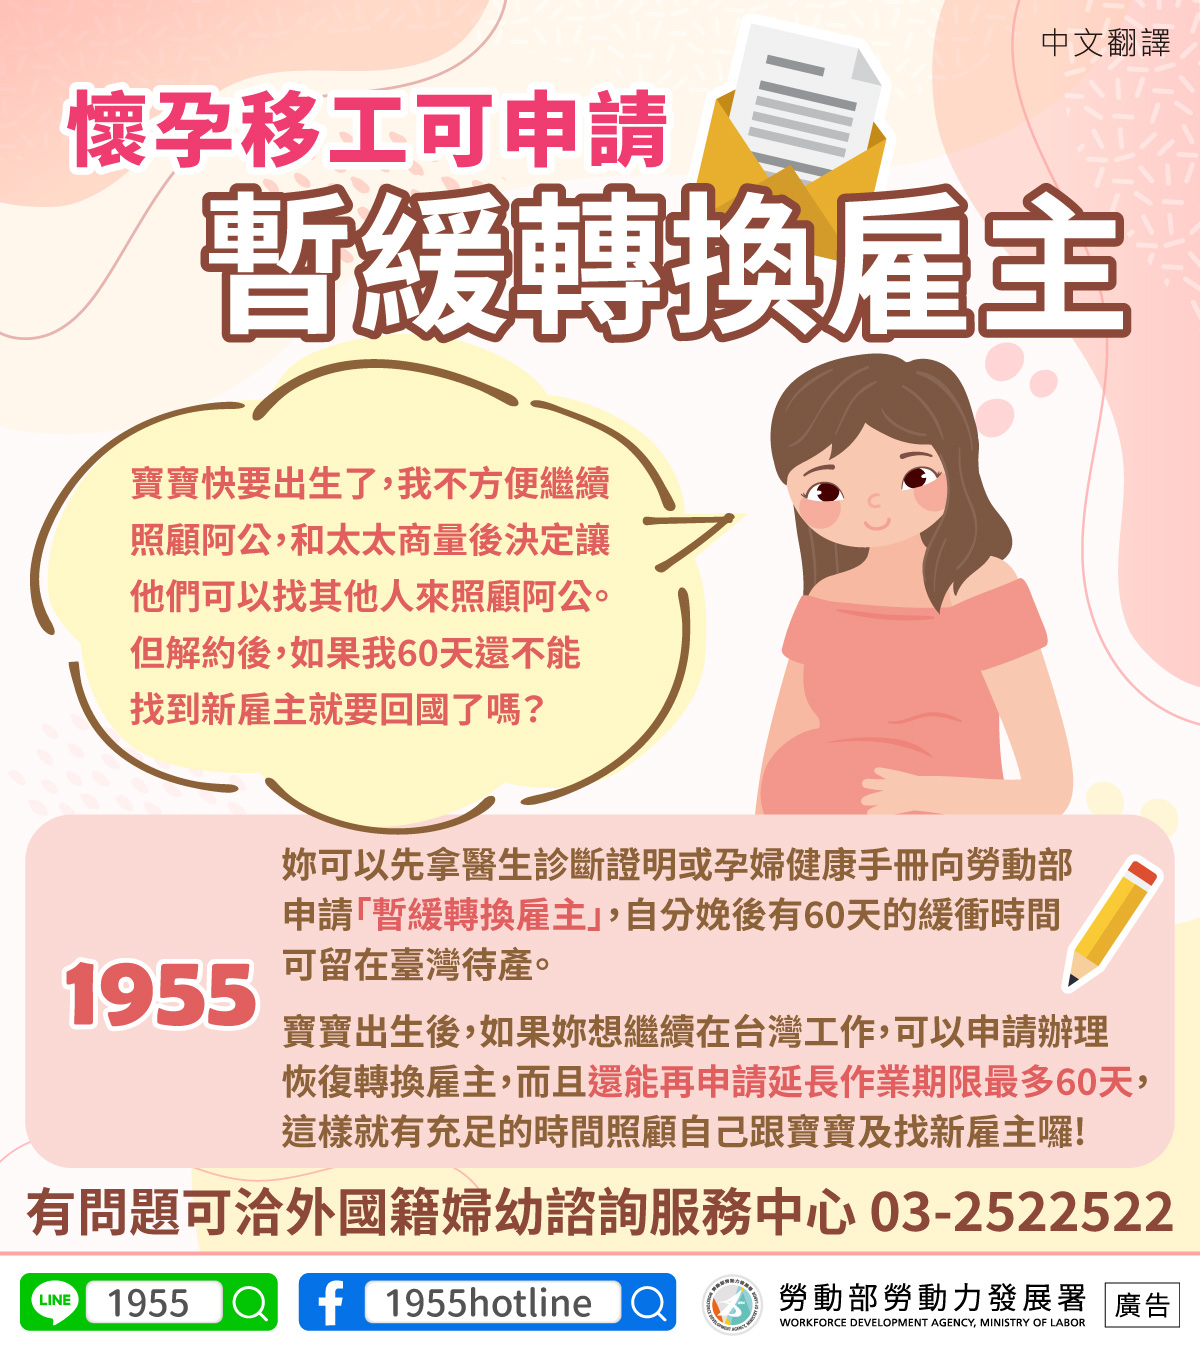 懷孕移工可申請暫緩轉換雇主-中文翻譯